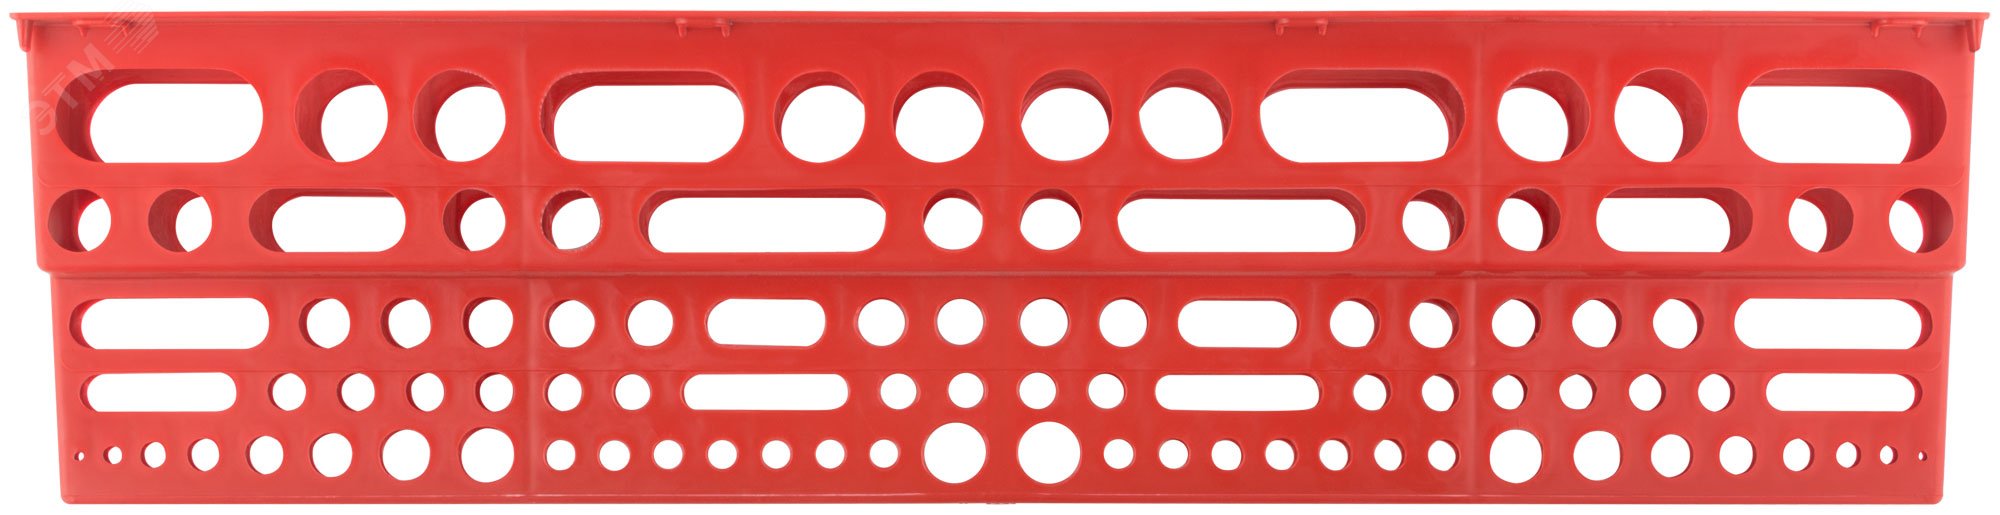 Полка для инструмента пластиковая красная, 96 отверстий, 610х150 мм 65706 FIT РОС - превью 3